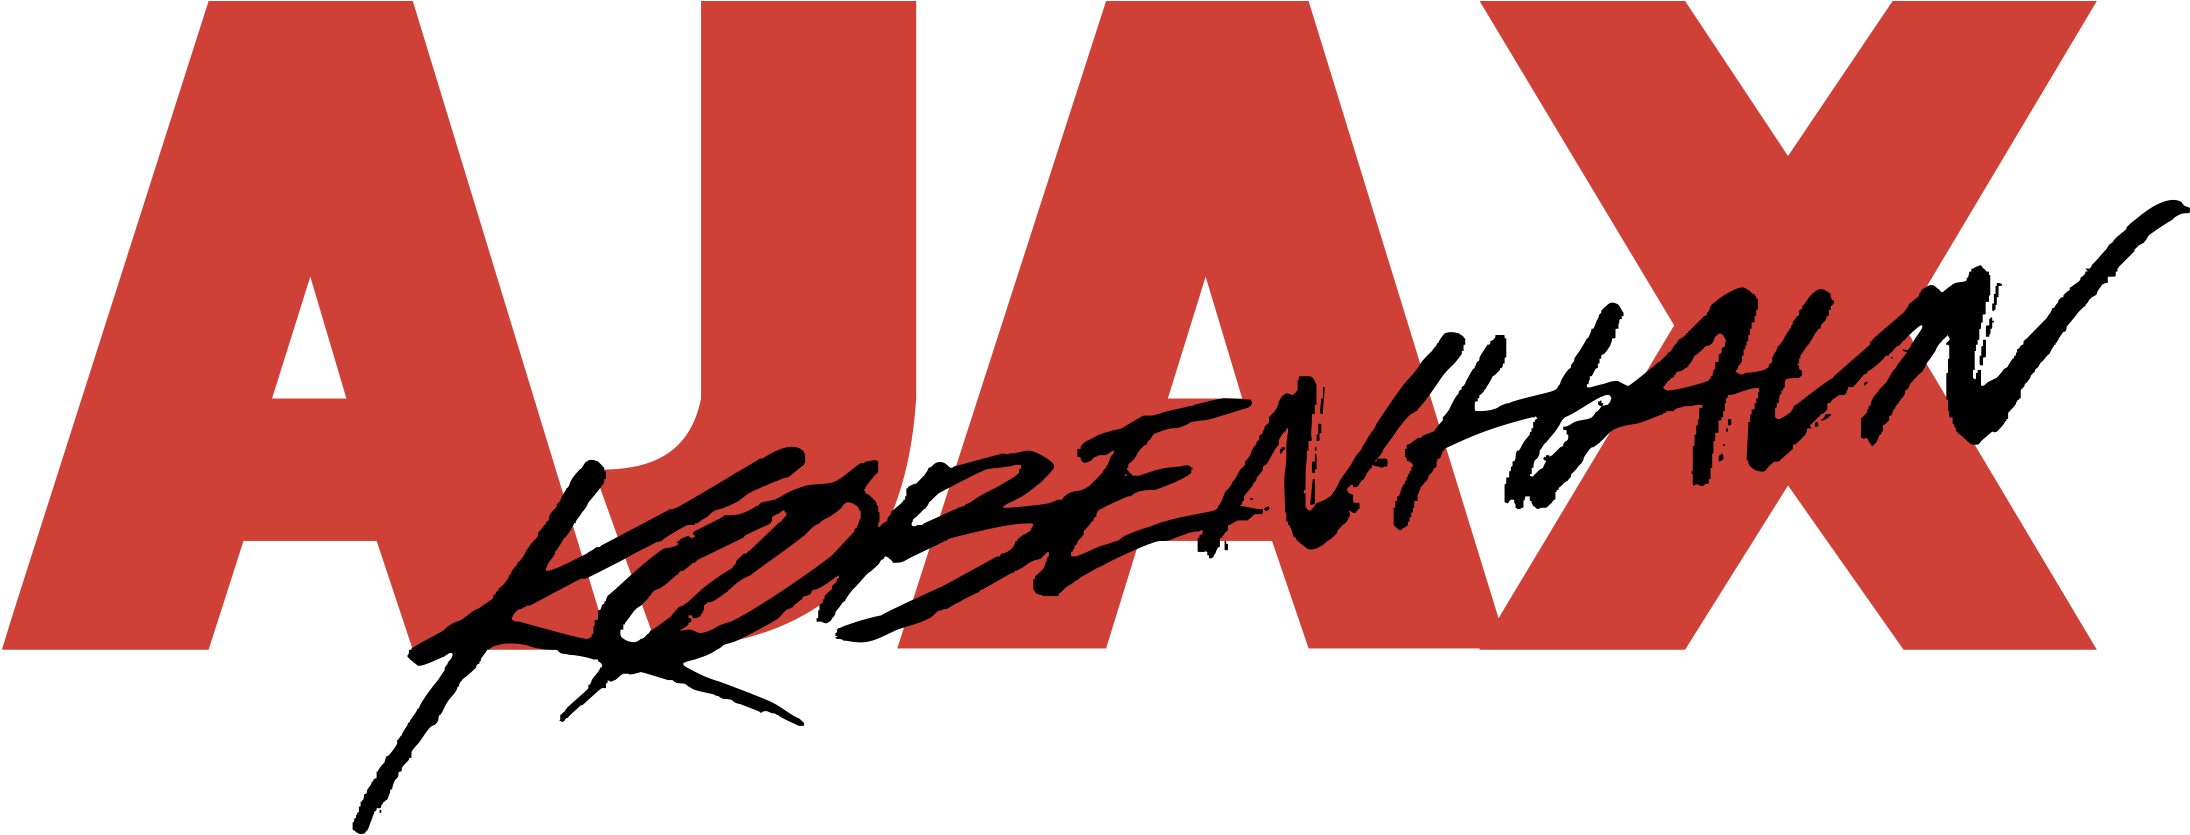 Ajax Copenhagen Logo Png Transparent - Ajax Clipart (2400x2400), Png Download